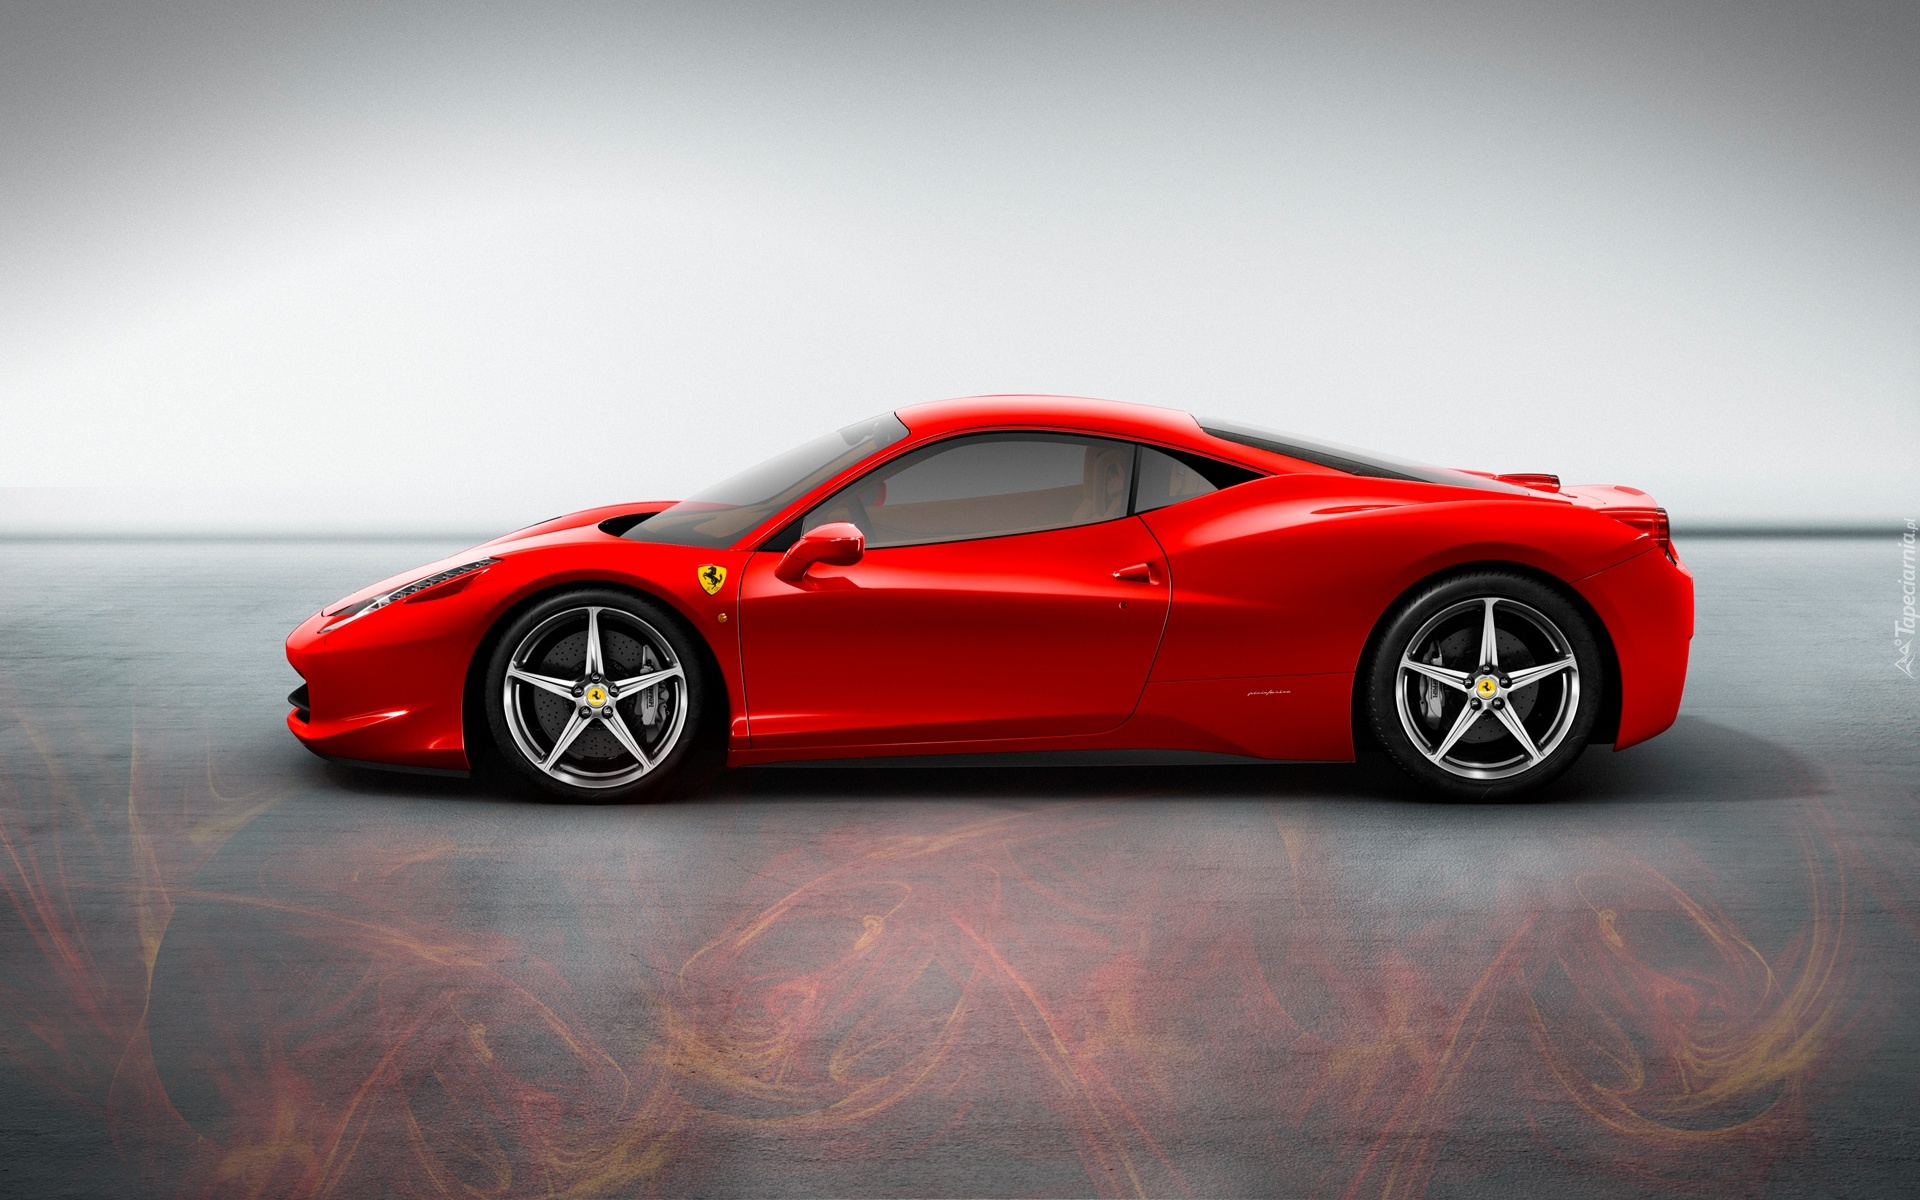 Ferrari 458 Italia, Profil